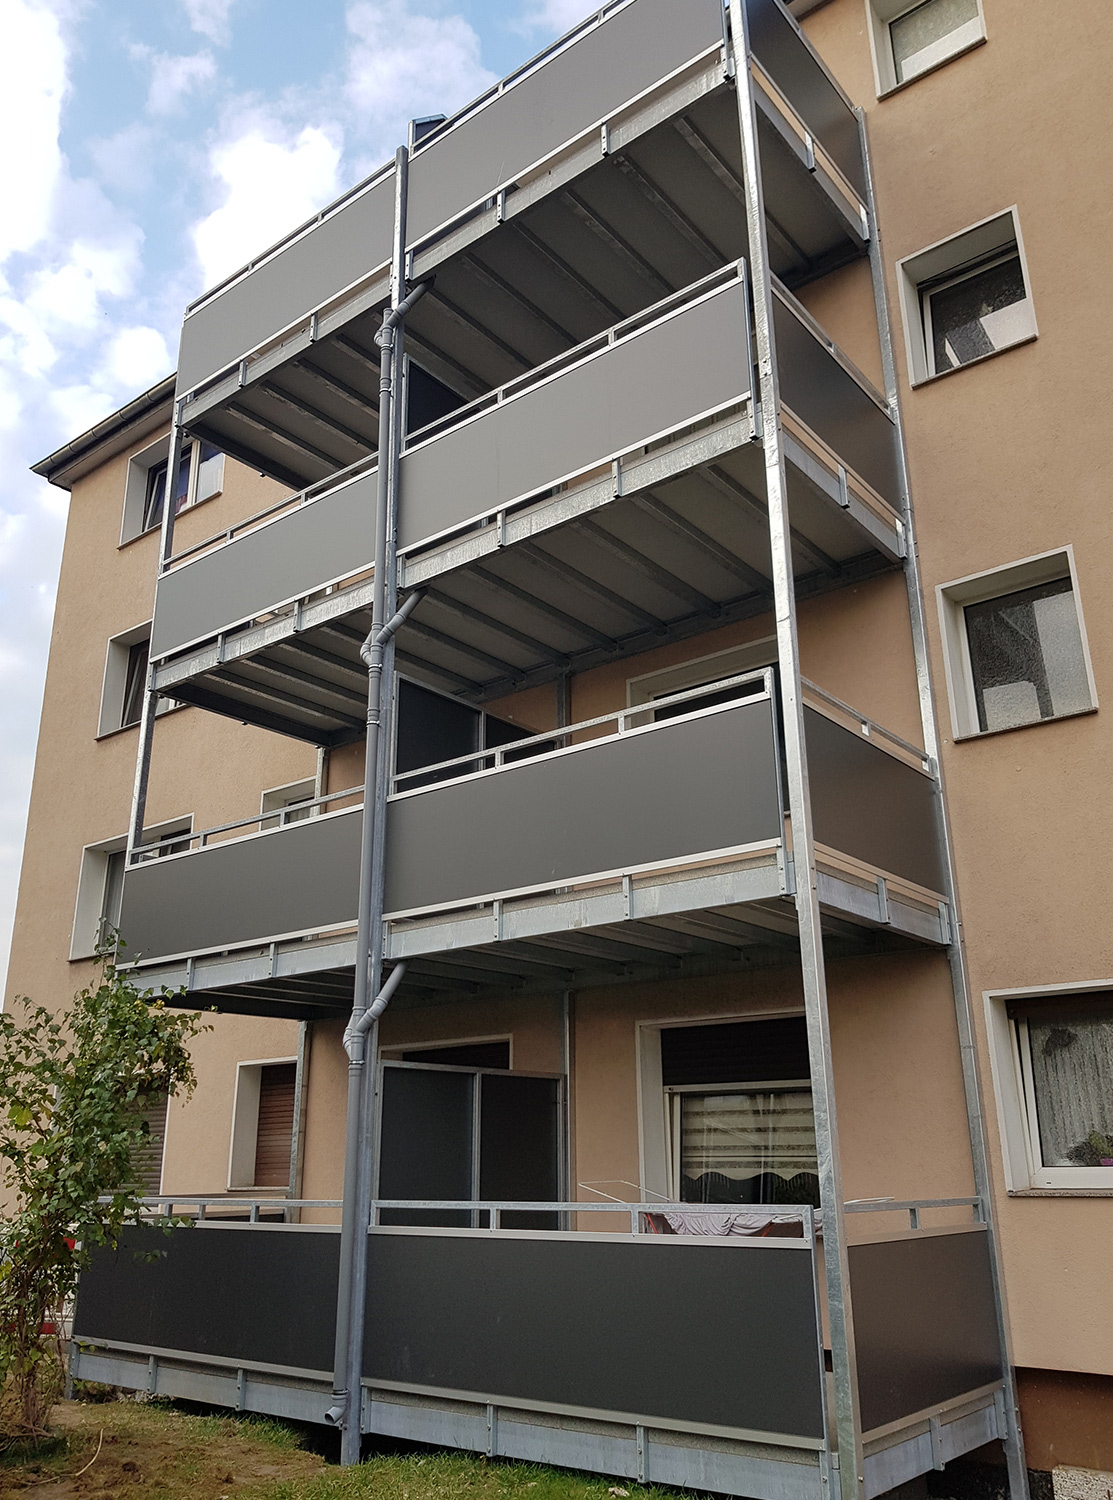 Balkone für Duisburger WEG, gebaut und umgesetzt von der Edelstahlschlosserei Nappenfeld aus Mülheim